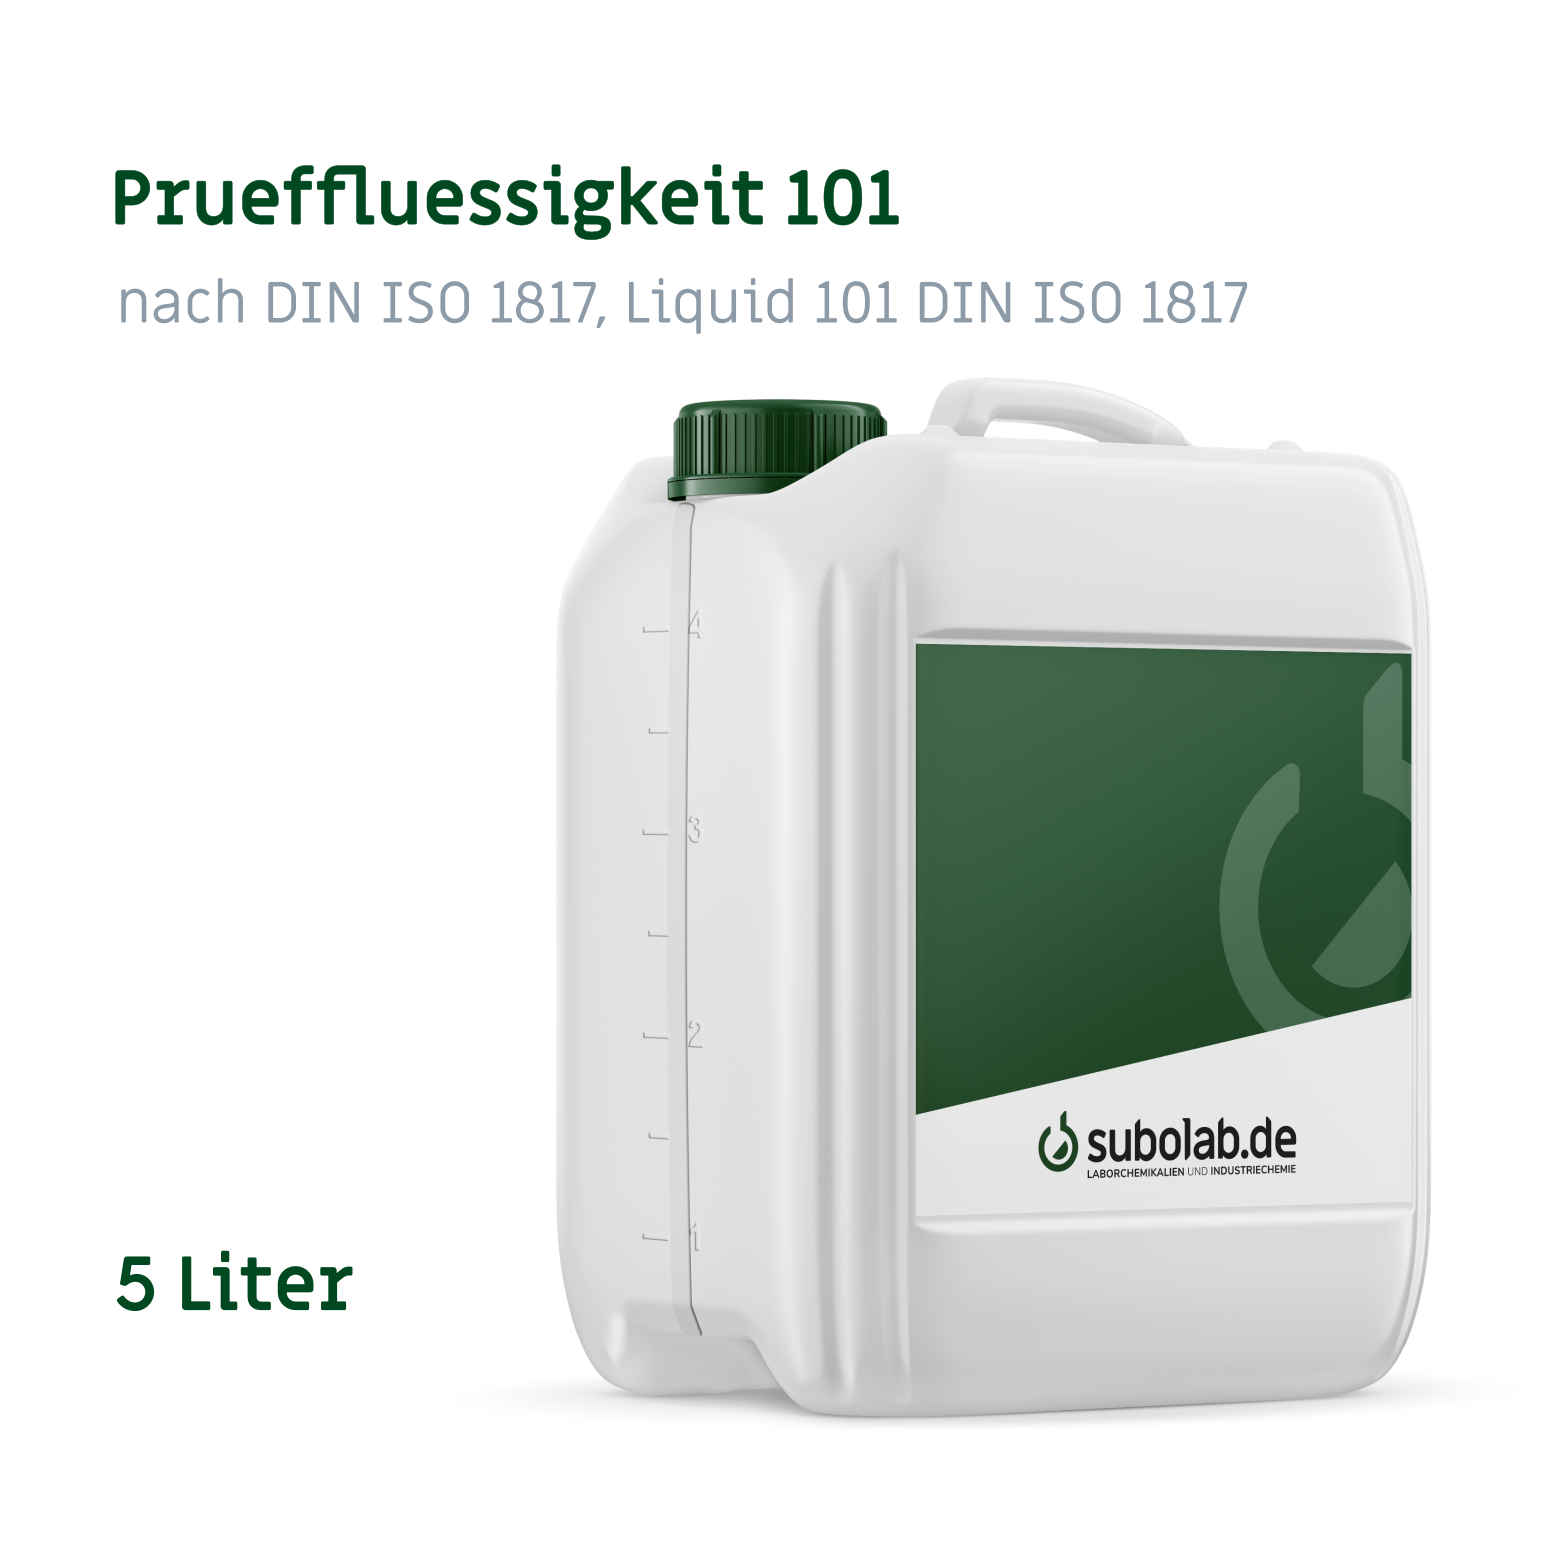 Bild von Prueffluessigkeit 101 nach DIN ISO 1817, Liquid 101 DIN ISO 1817 (5 Liter)